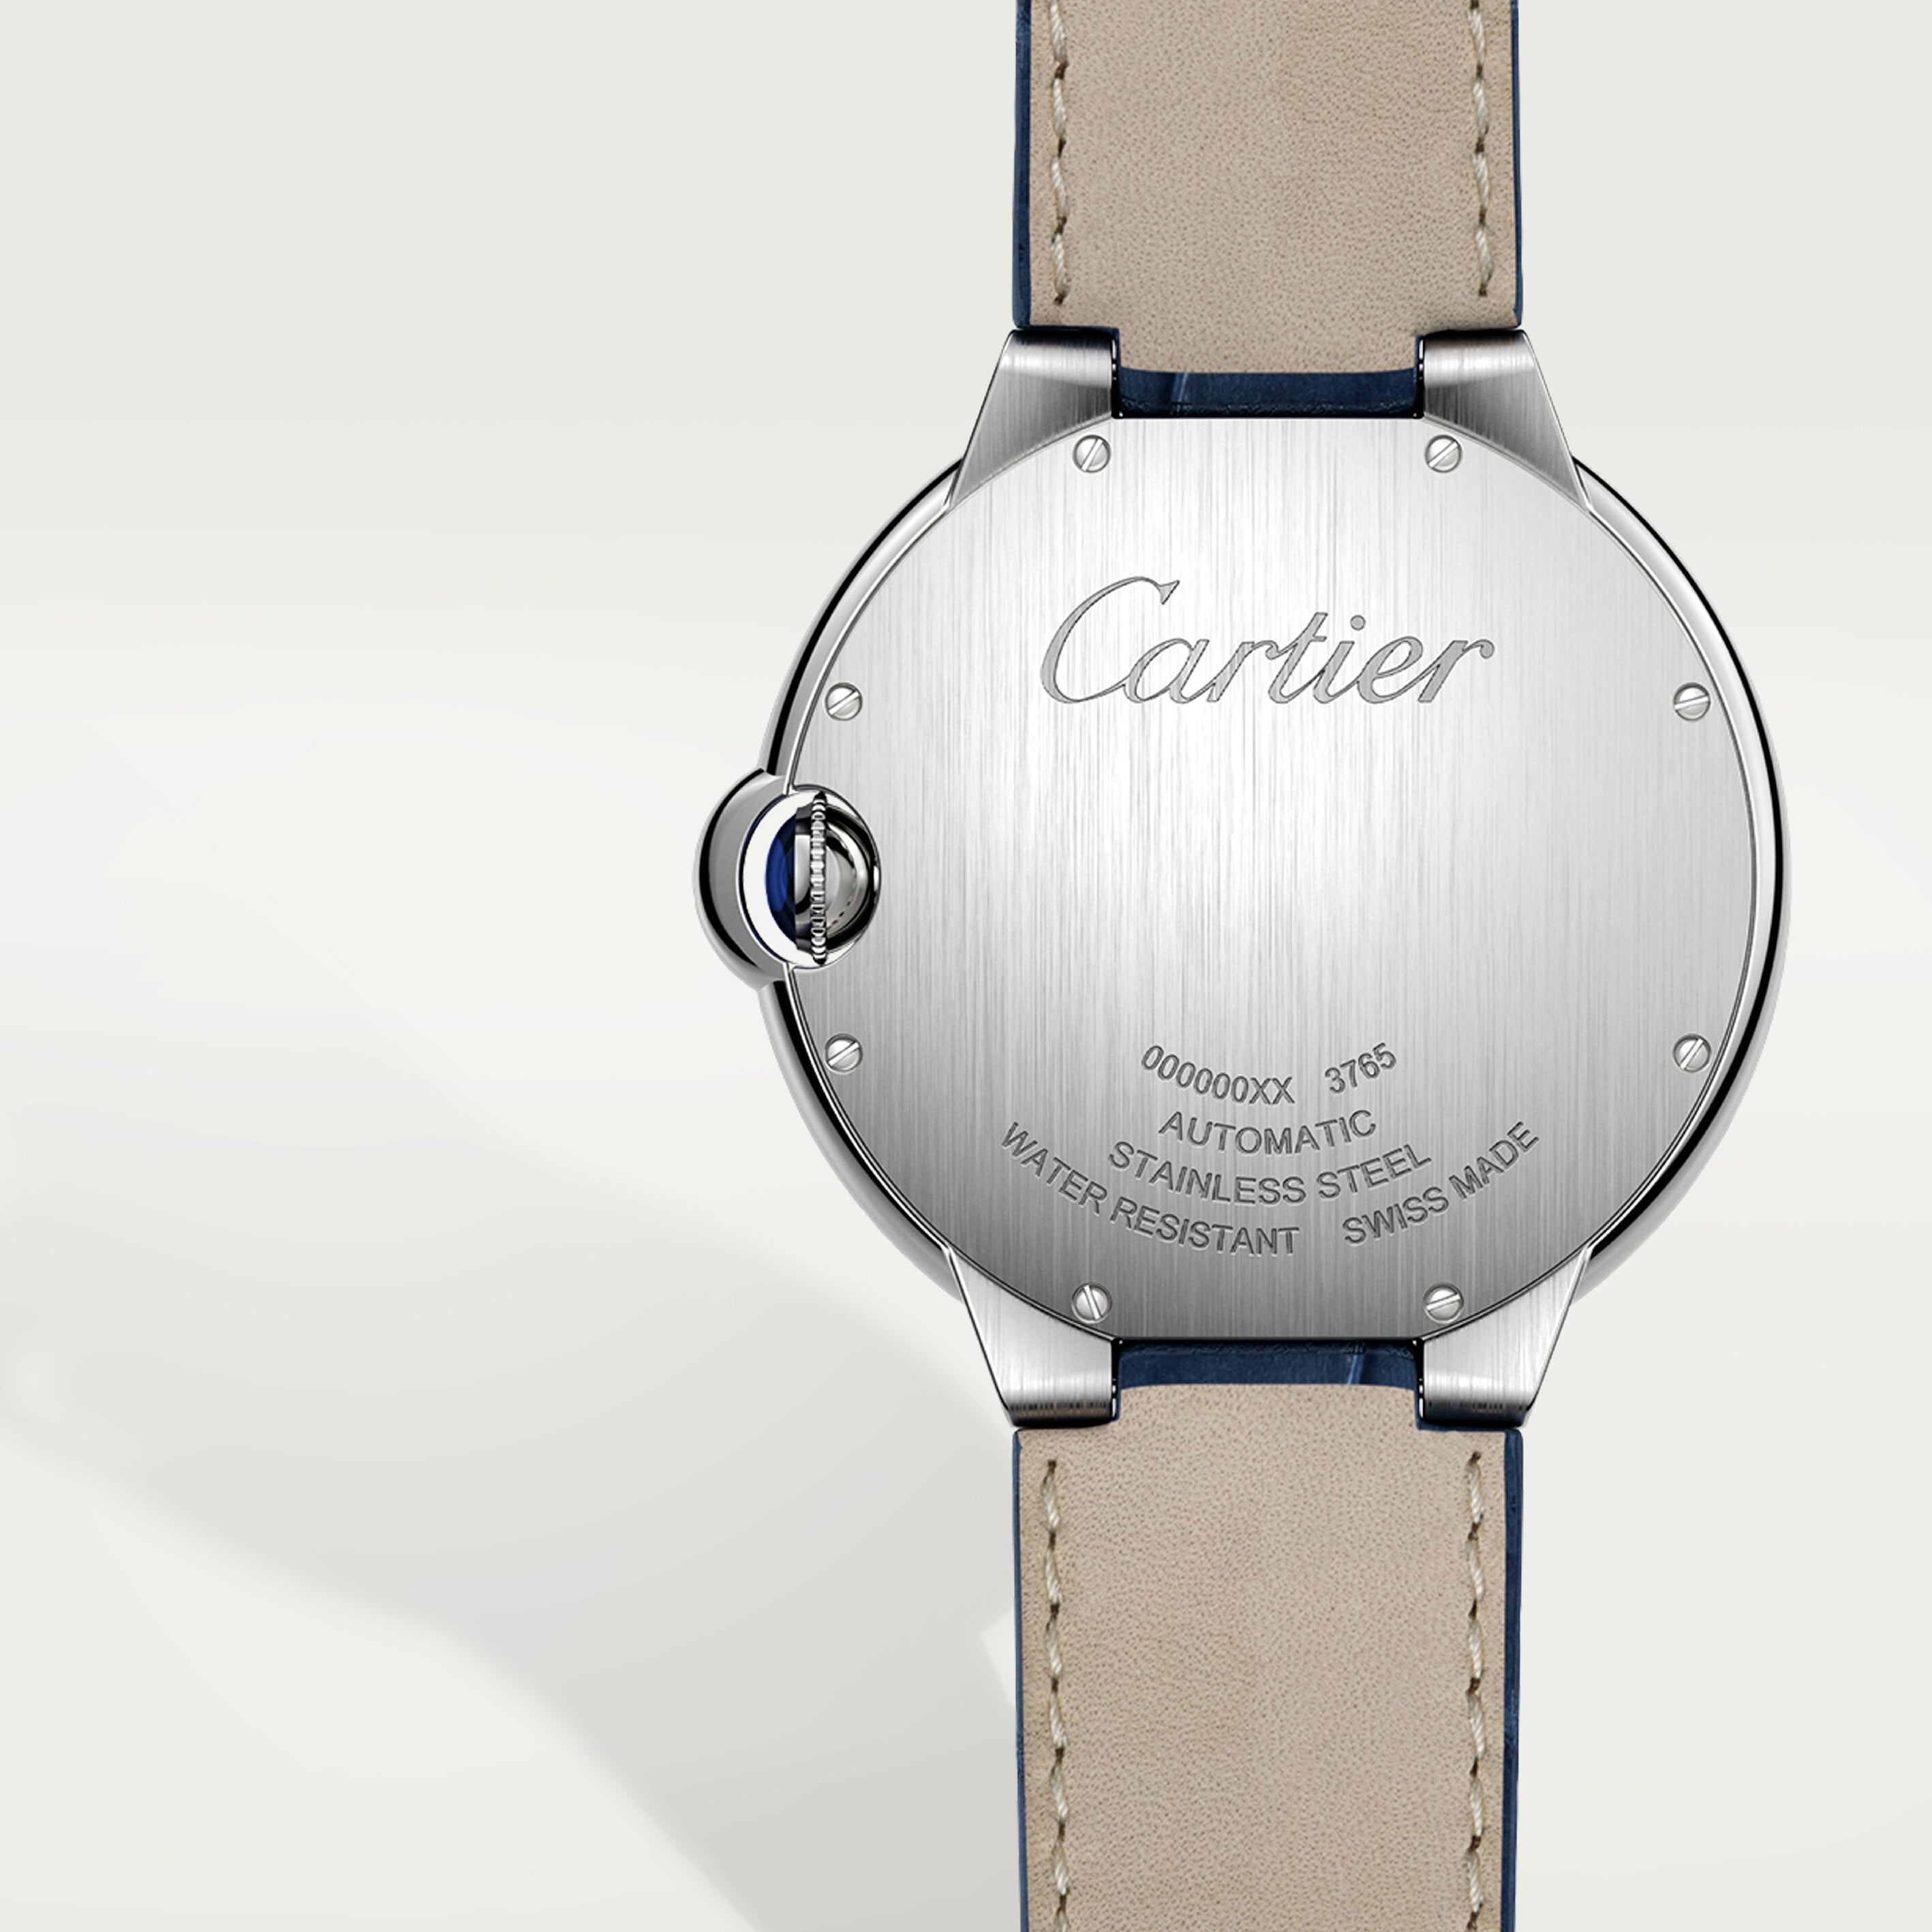 Ballon de Cartier5